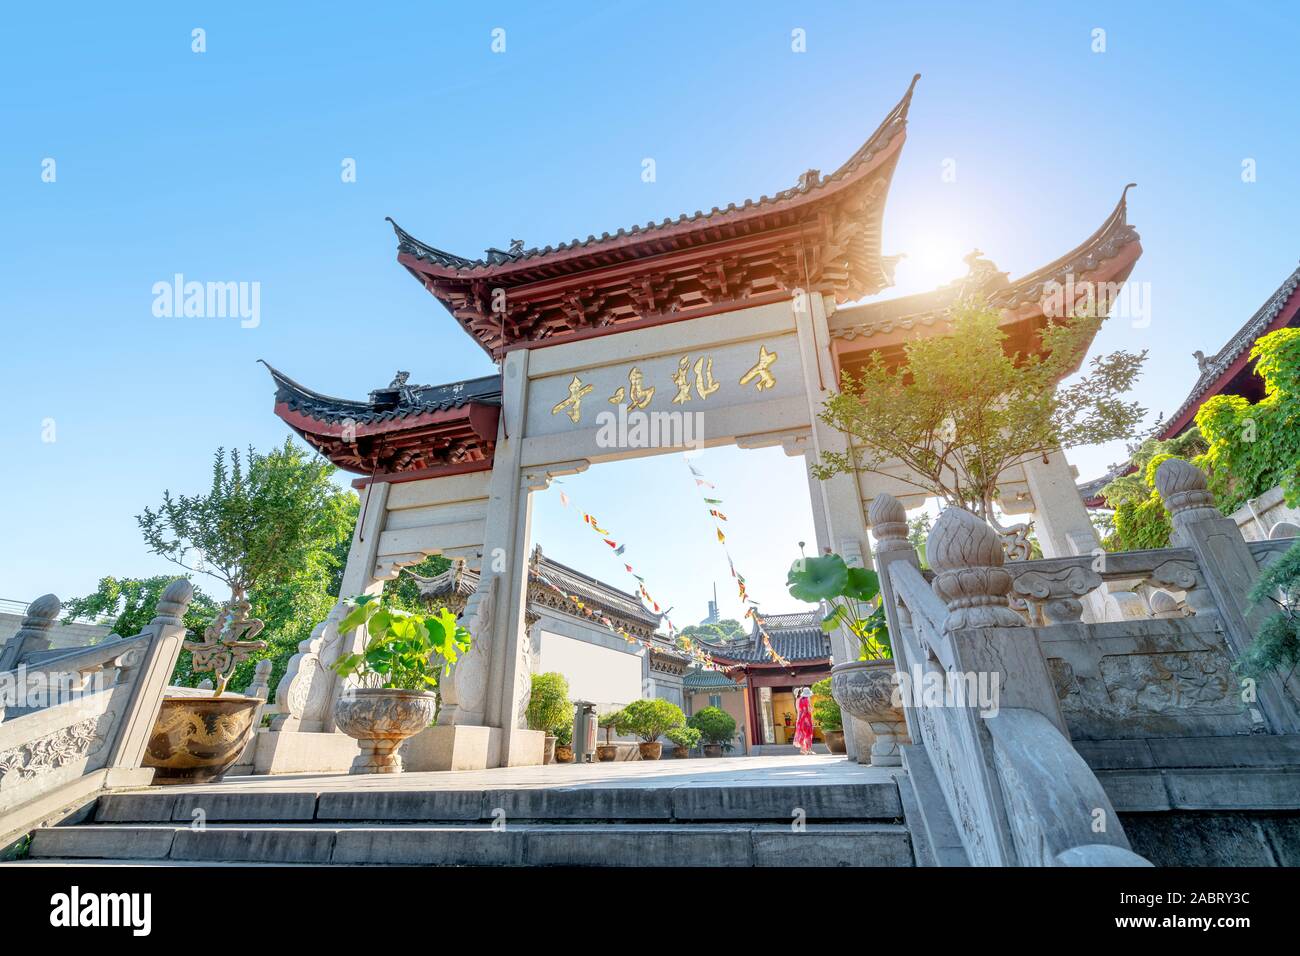 Jiming Tempel wurde im Jahre 1387 erbaut und war das Zentrum des Buddhismus in der südlichen Dynastien. Nanjing, China. Übersetzung: "jiming antiken Tempel' Stockfoto